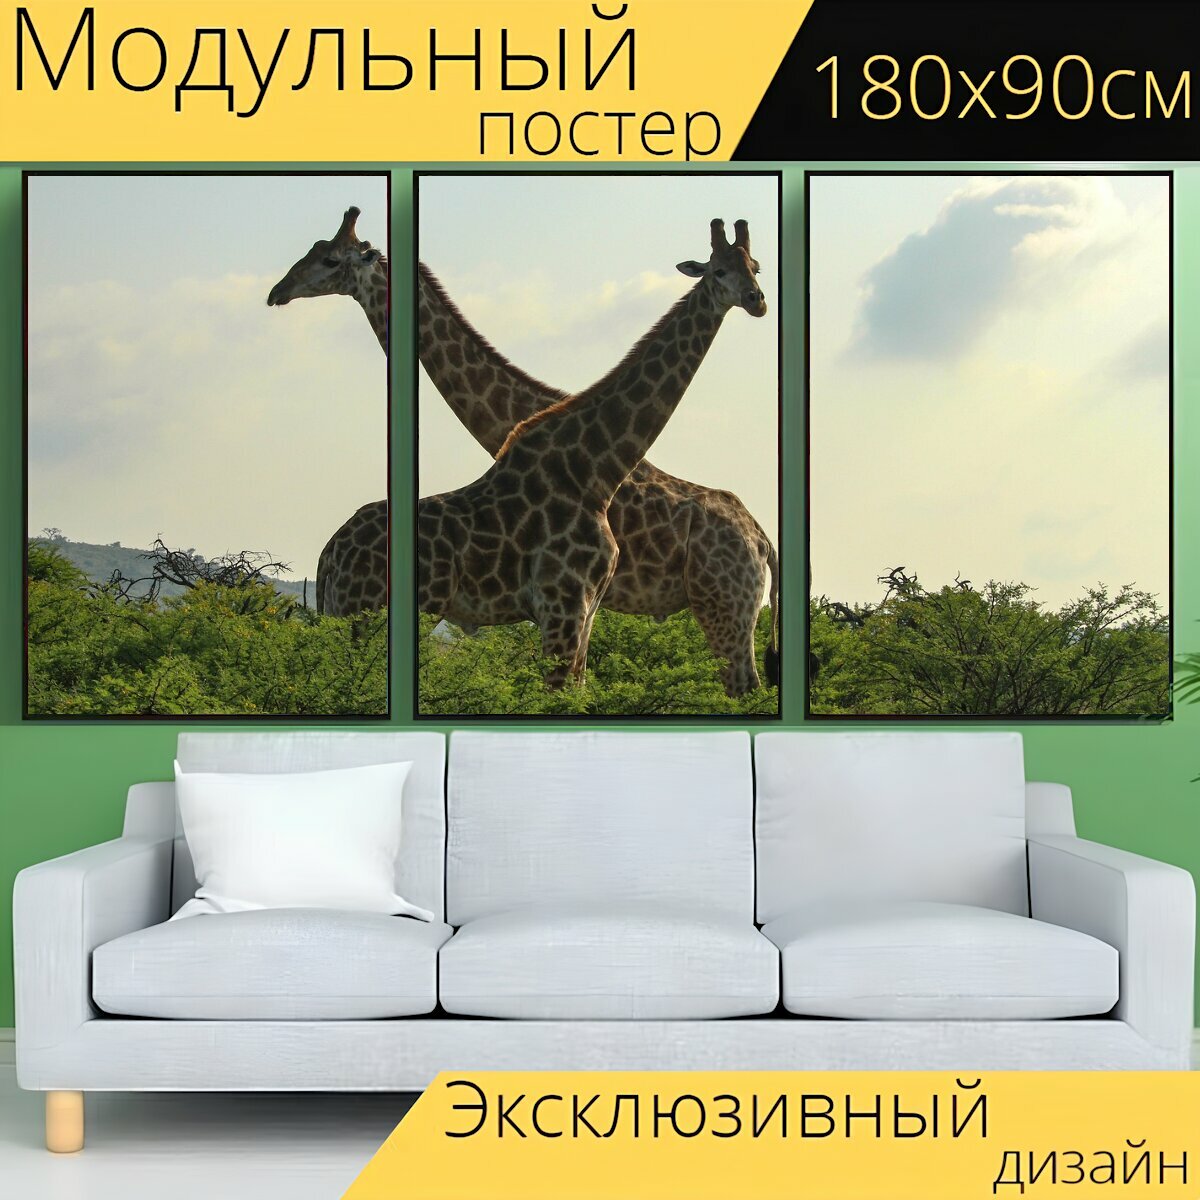 Модульный постер "Жирафы, жирафа, сафари" 180 x 90 см. для интерьера